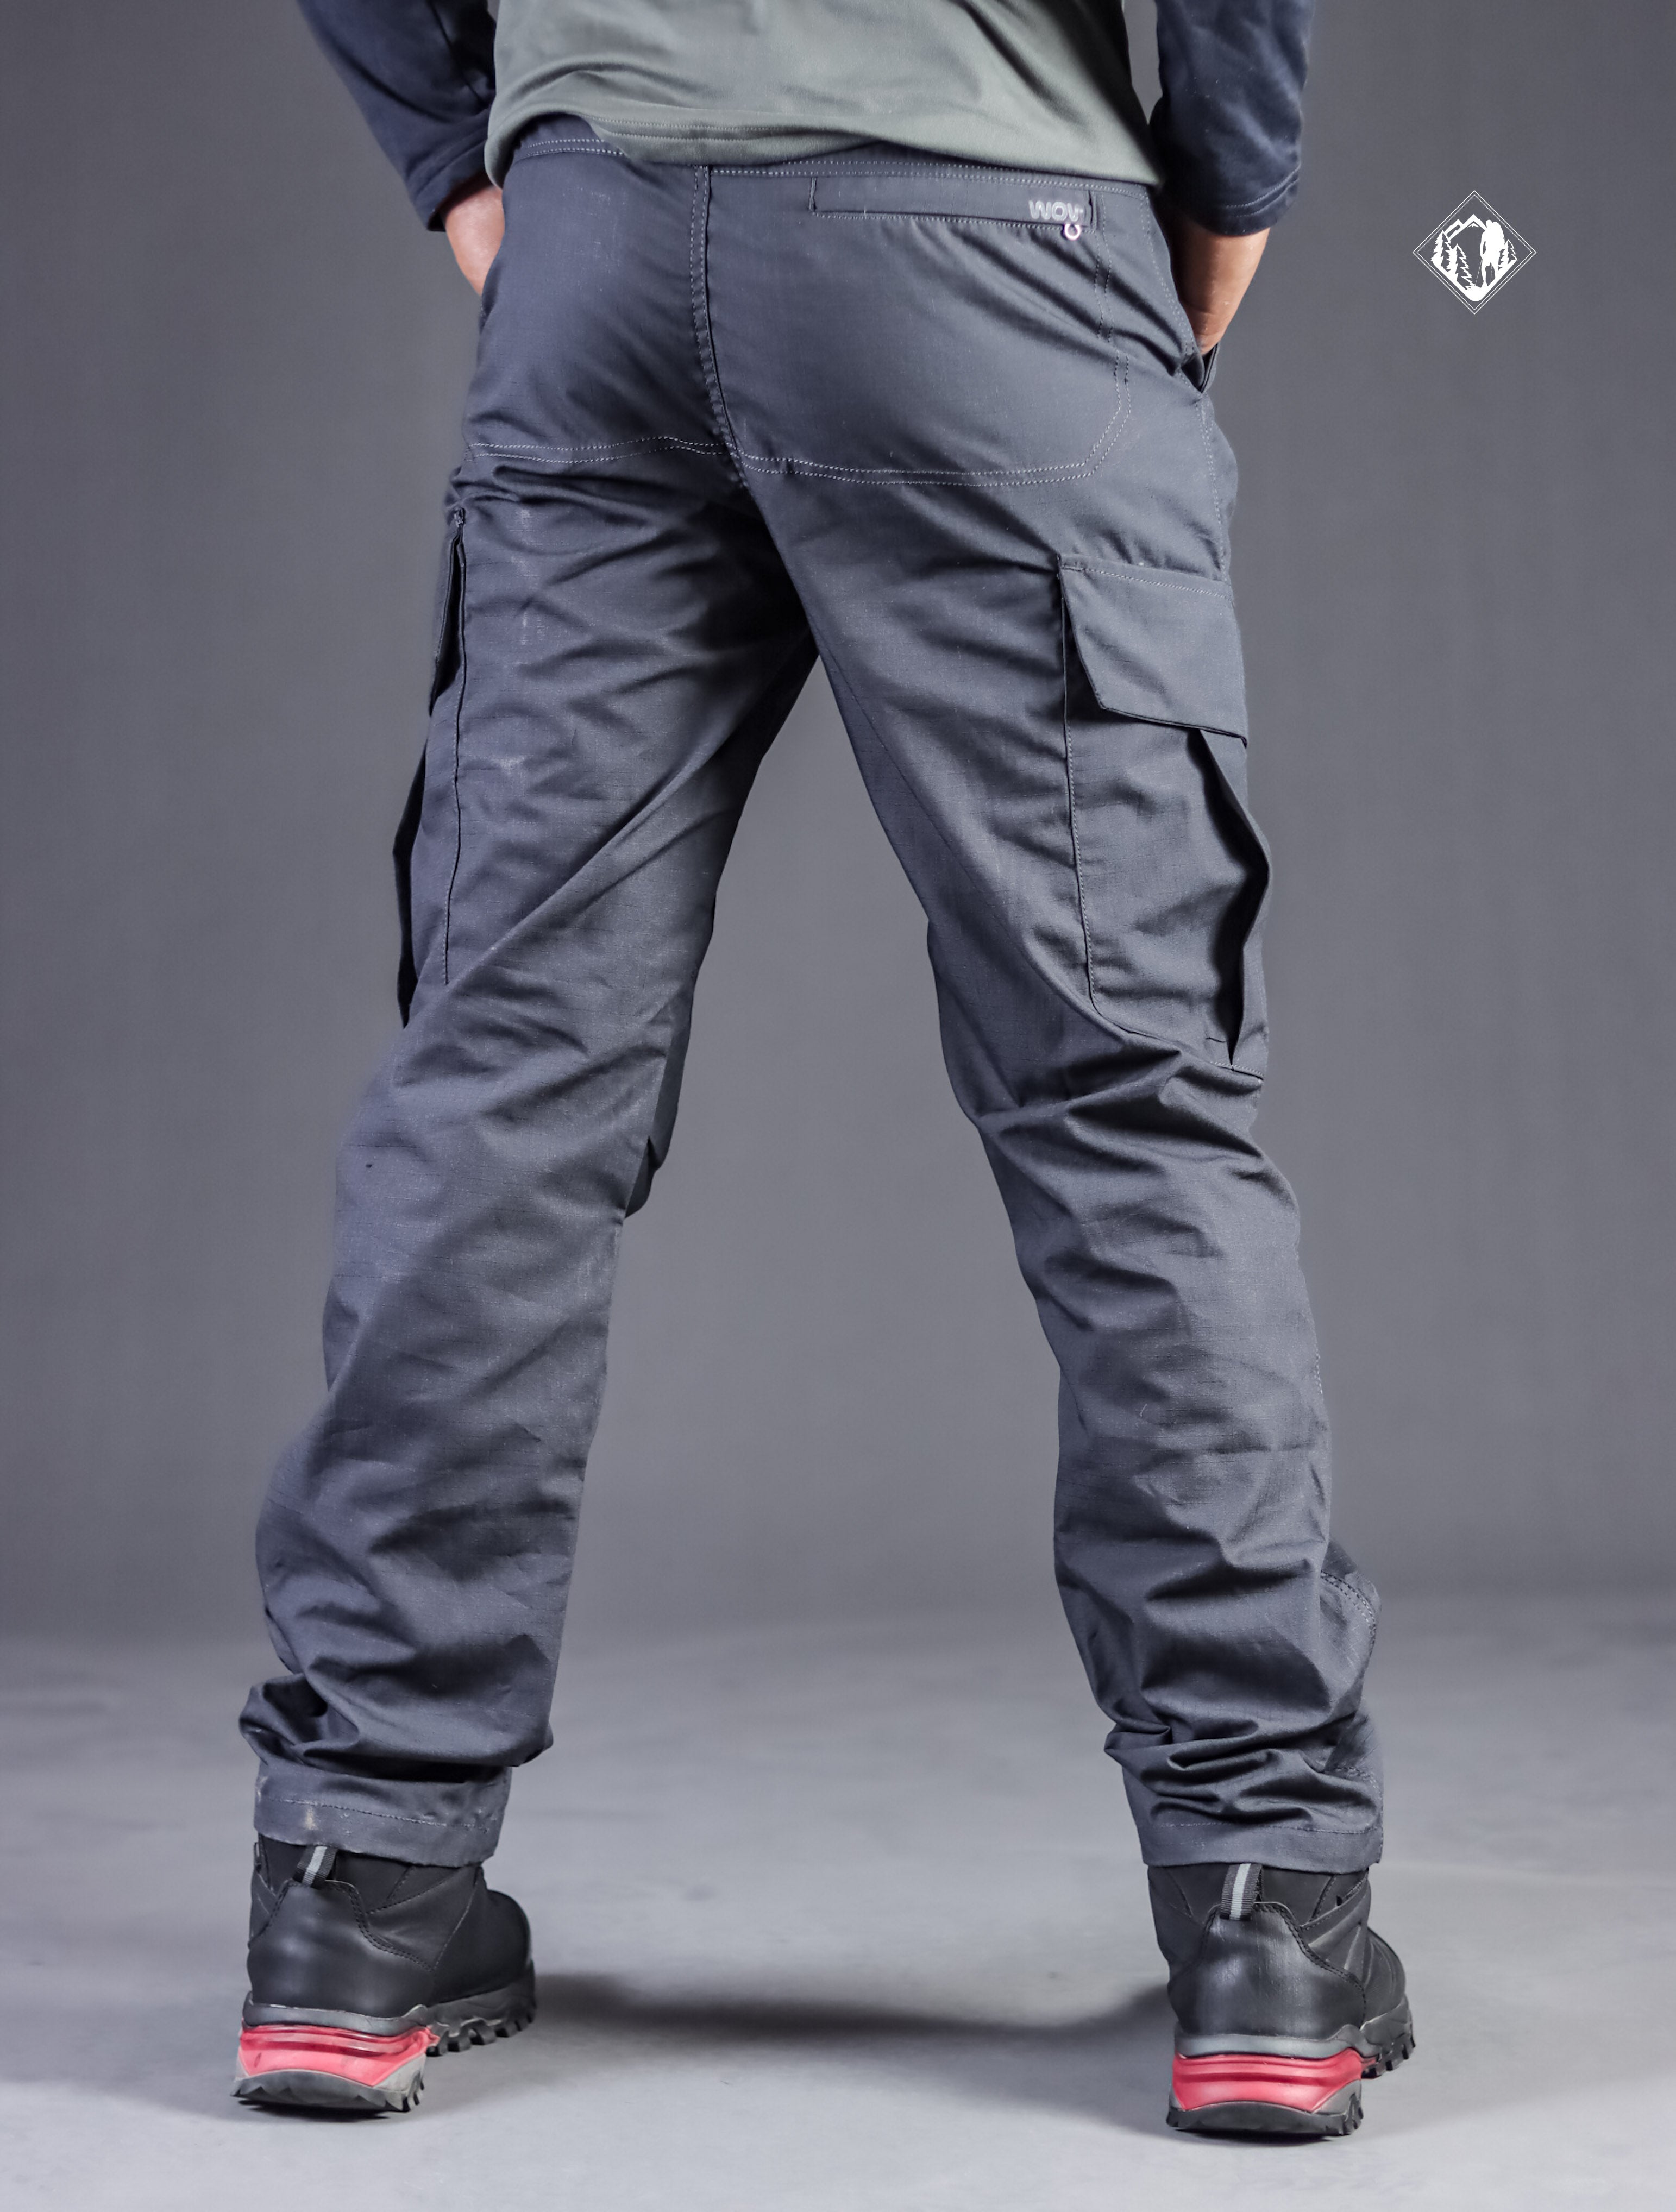 Walkoutwear 6 Pocket Cargo with Exiting colour  Best Trekking Wear Brand  In India WALKOUT WEAR